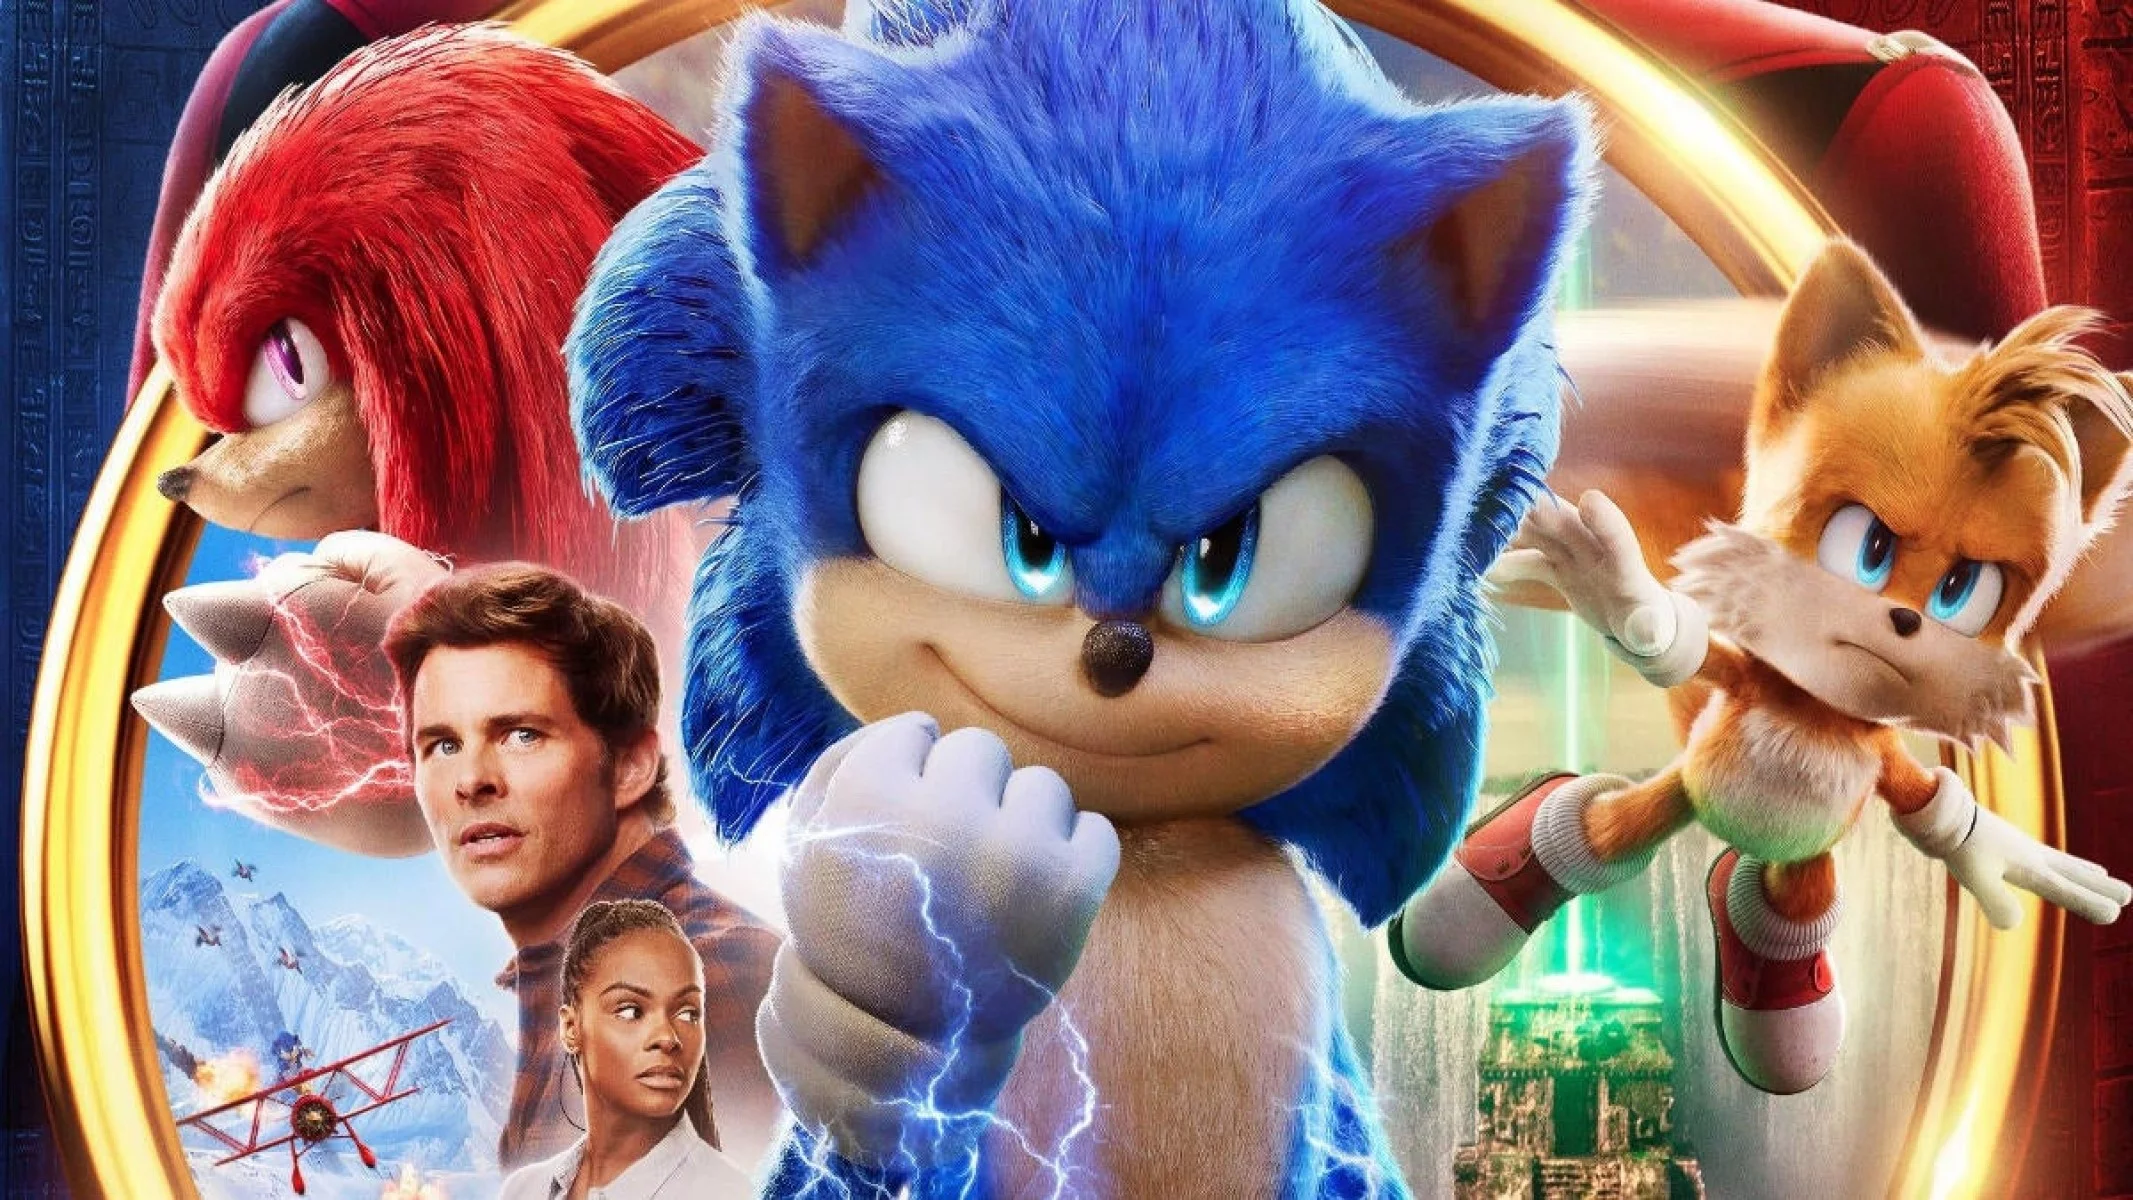 Sonic 2: O Filme'  Conheça os personagens da sequência - CinePOP